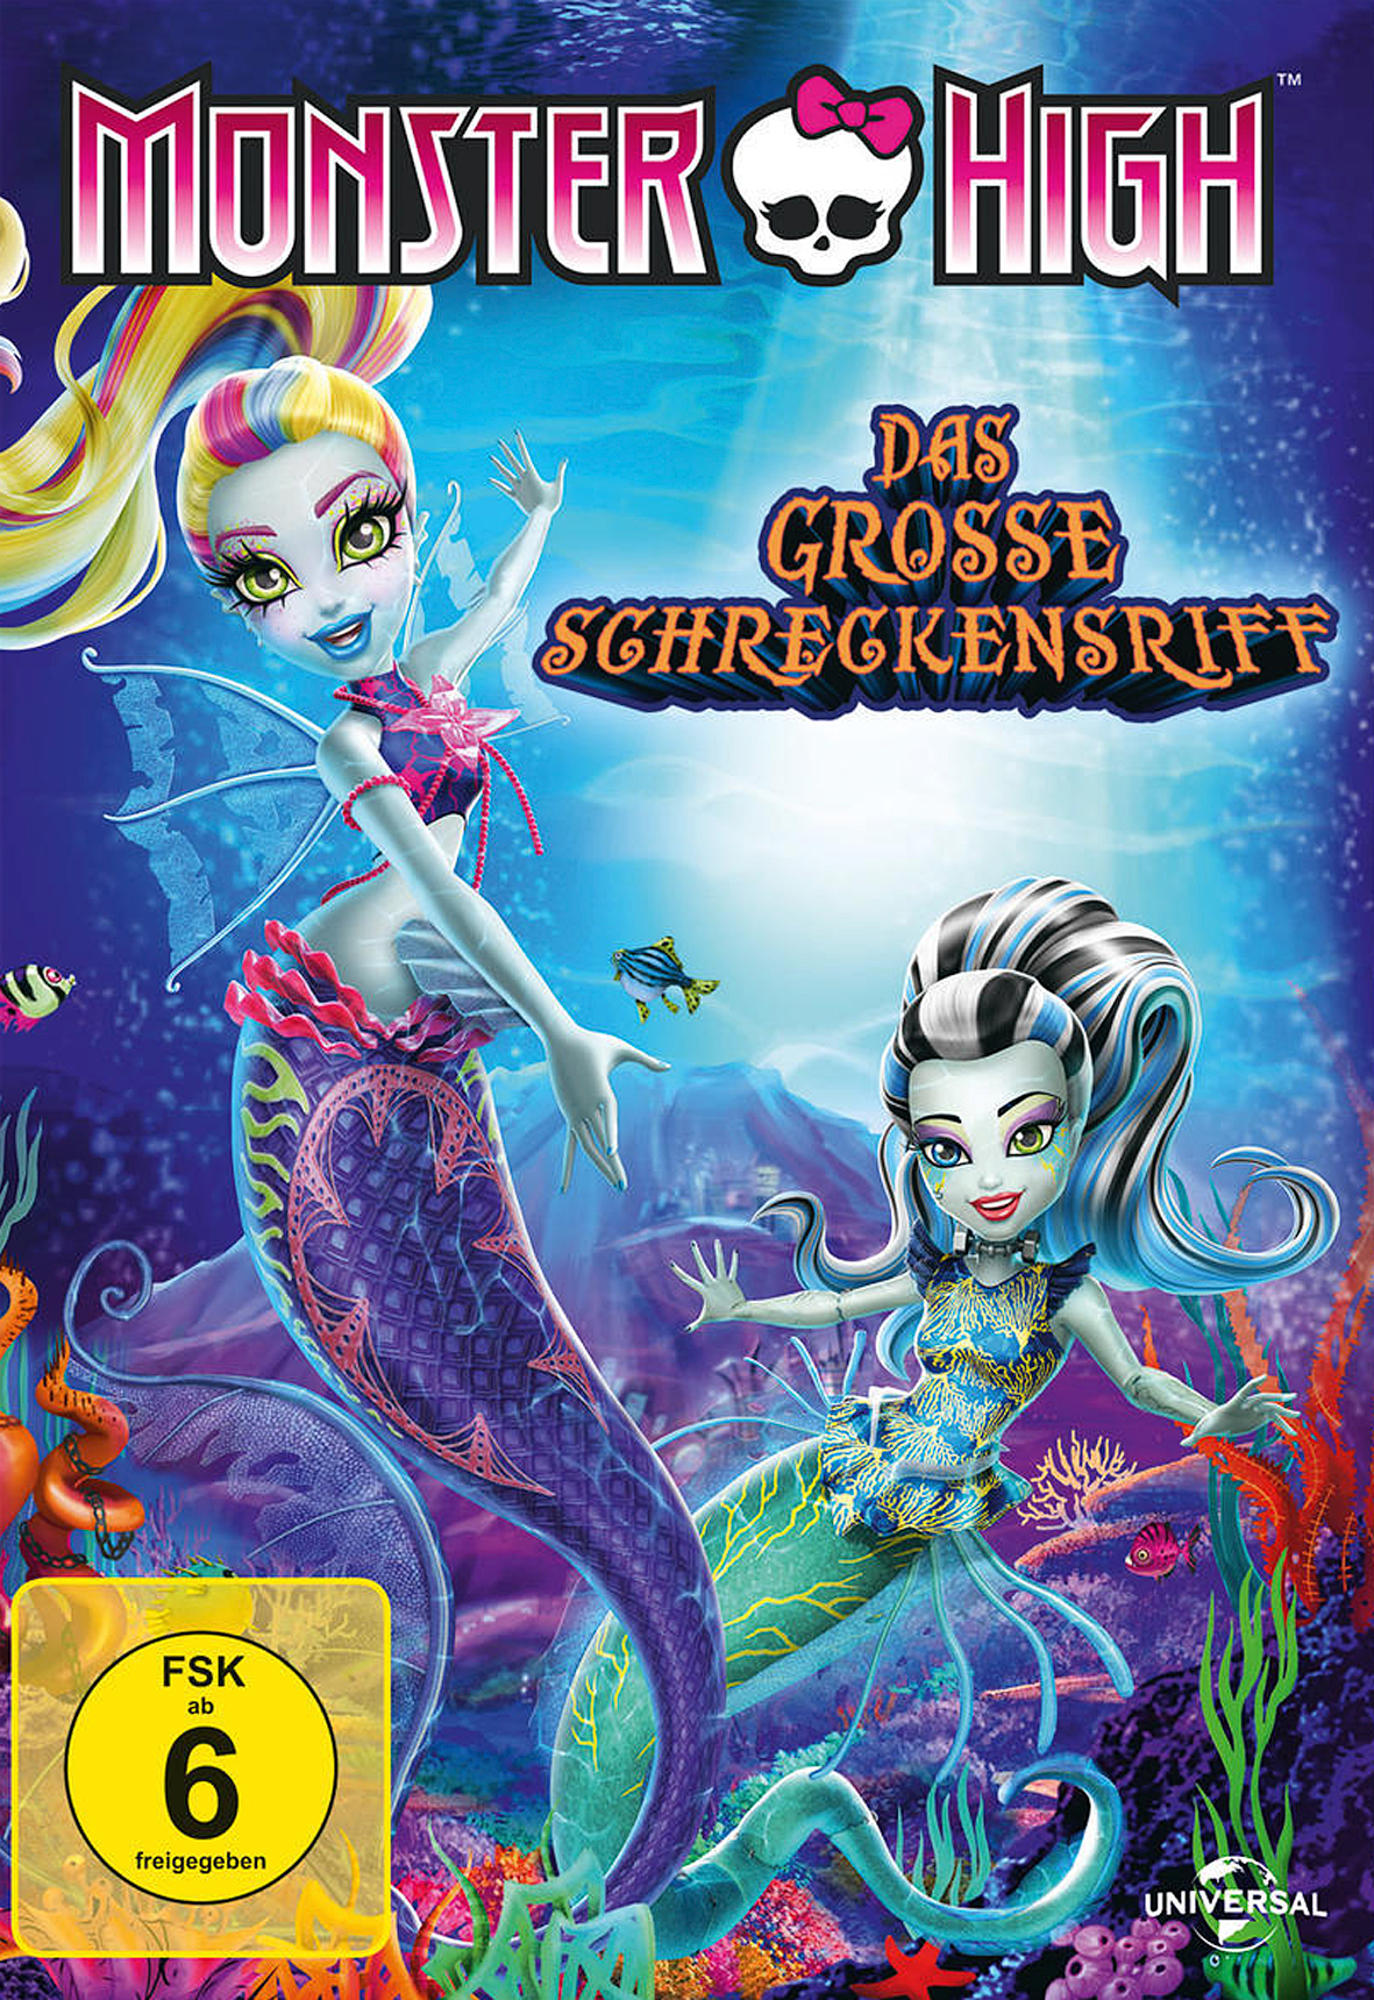 Monster High Schreckensriff DVD Das große 